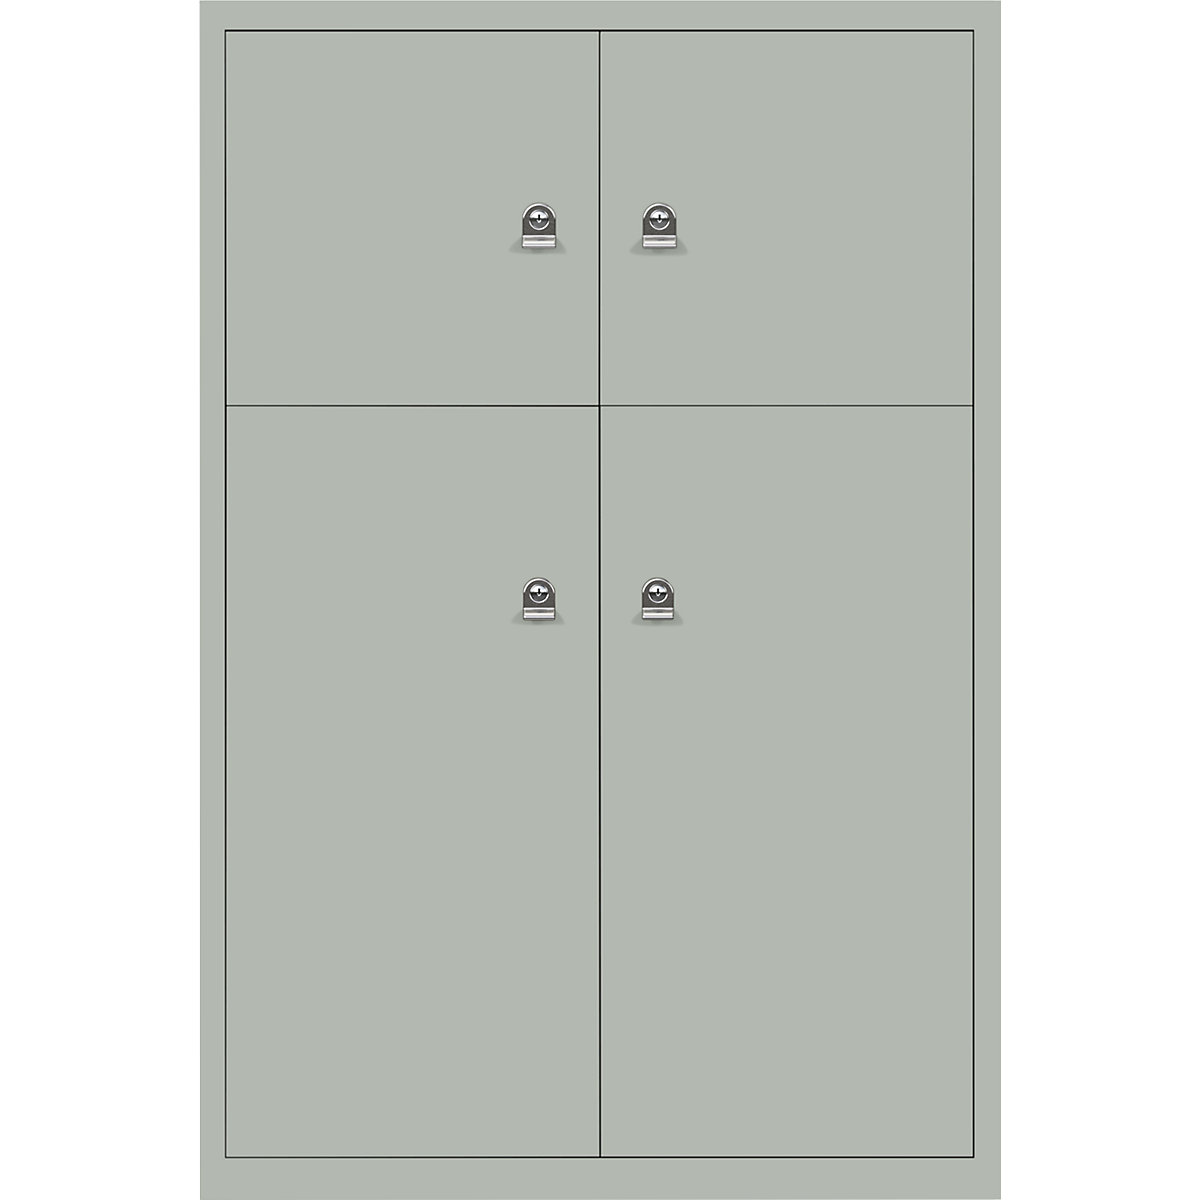 Omara s predelki z zaklepanjem LateralFile™ – BISLEY, 4 predelki z zaklepanjem, višina 2 x 375 mm, 2 x 755 mm, jorško sive barve-29